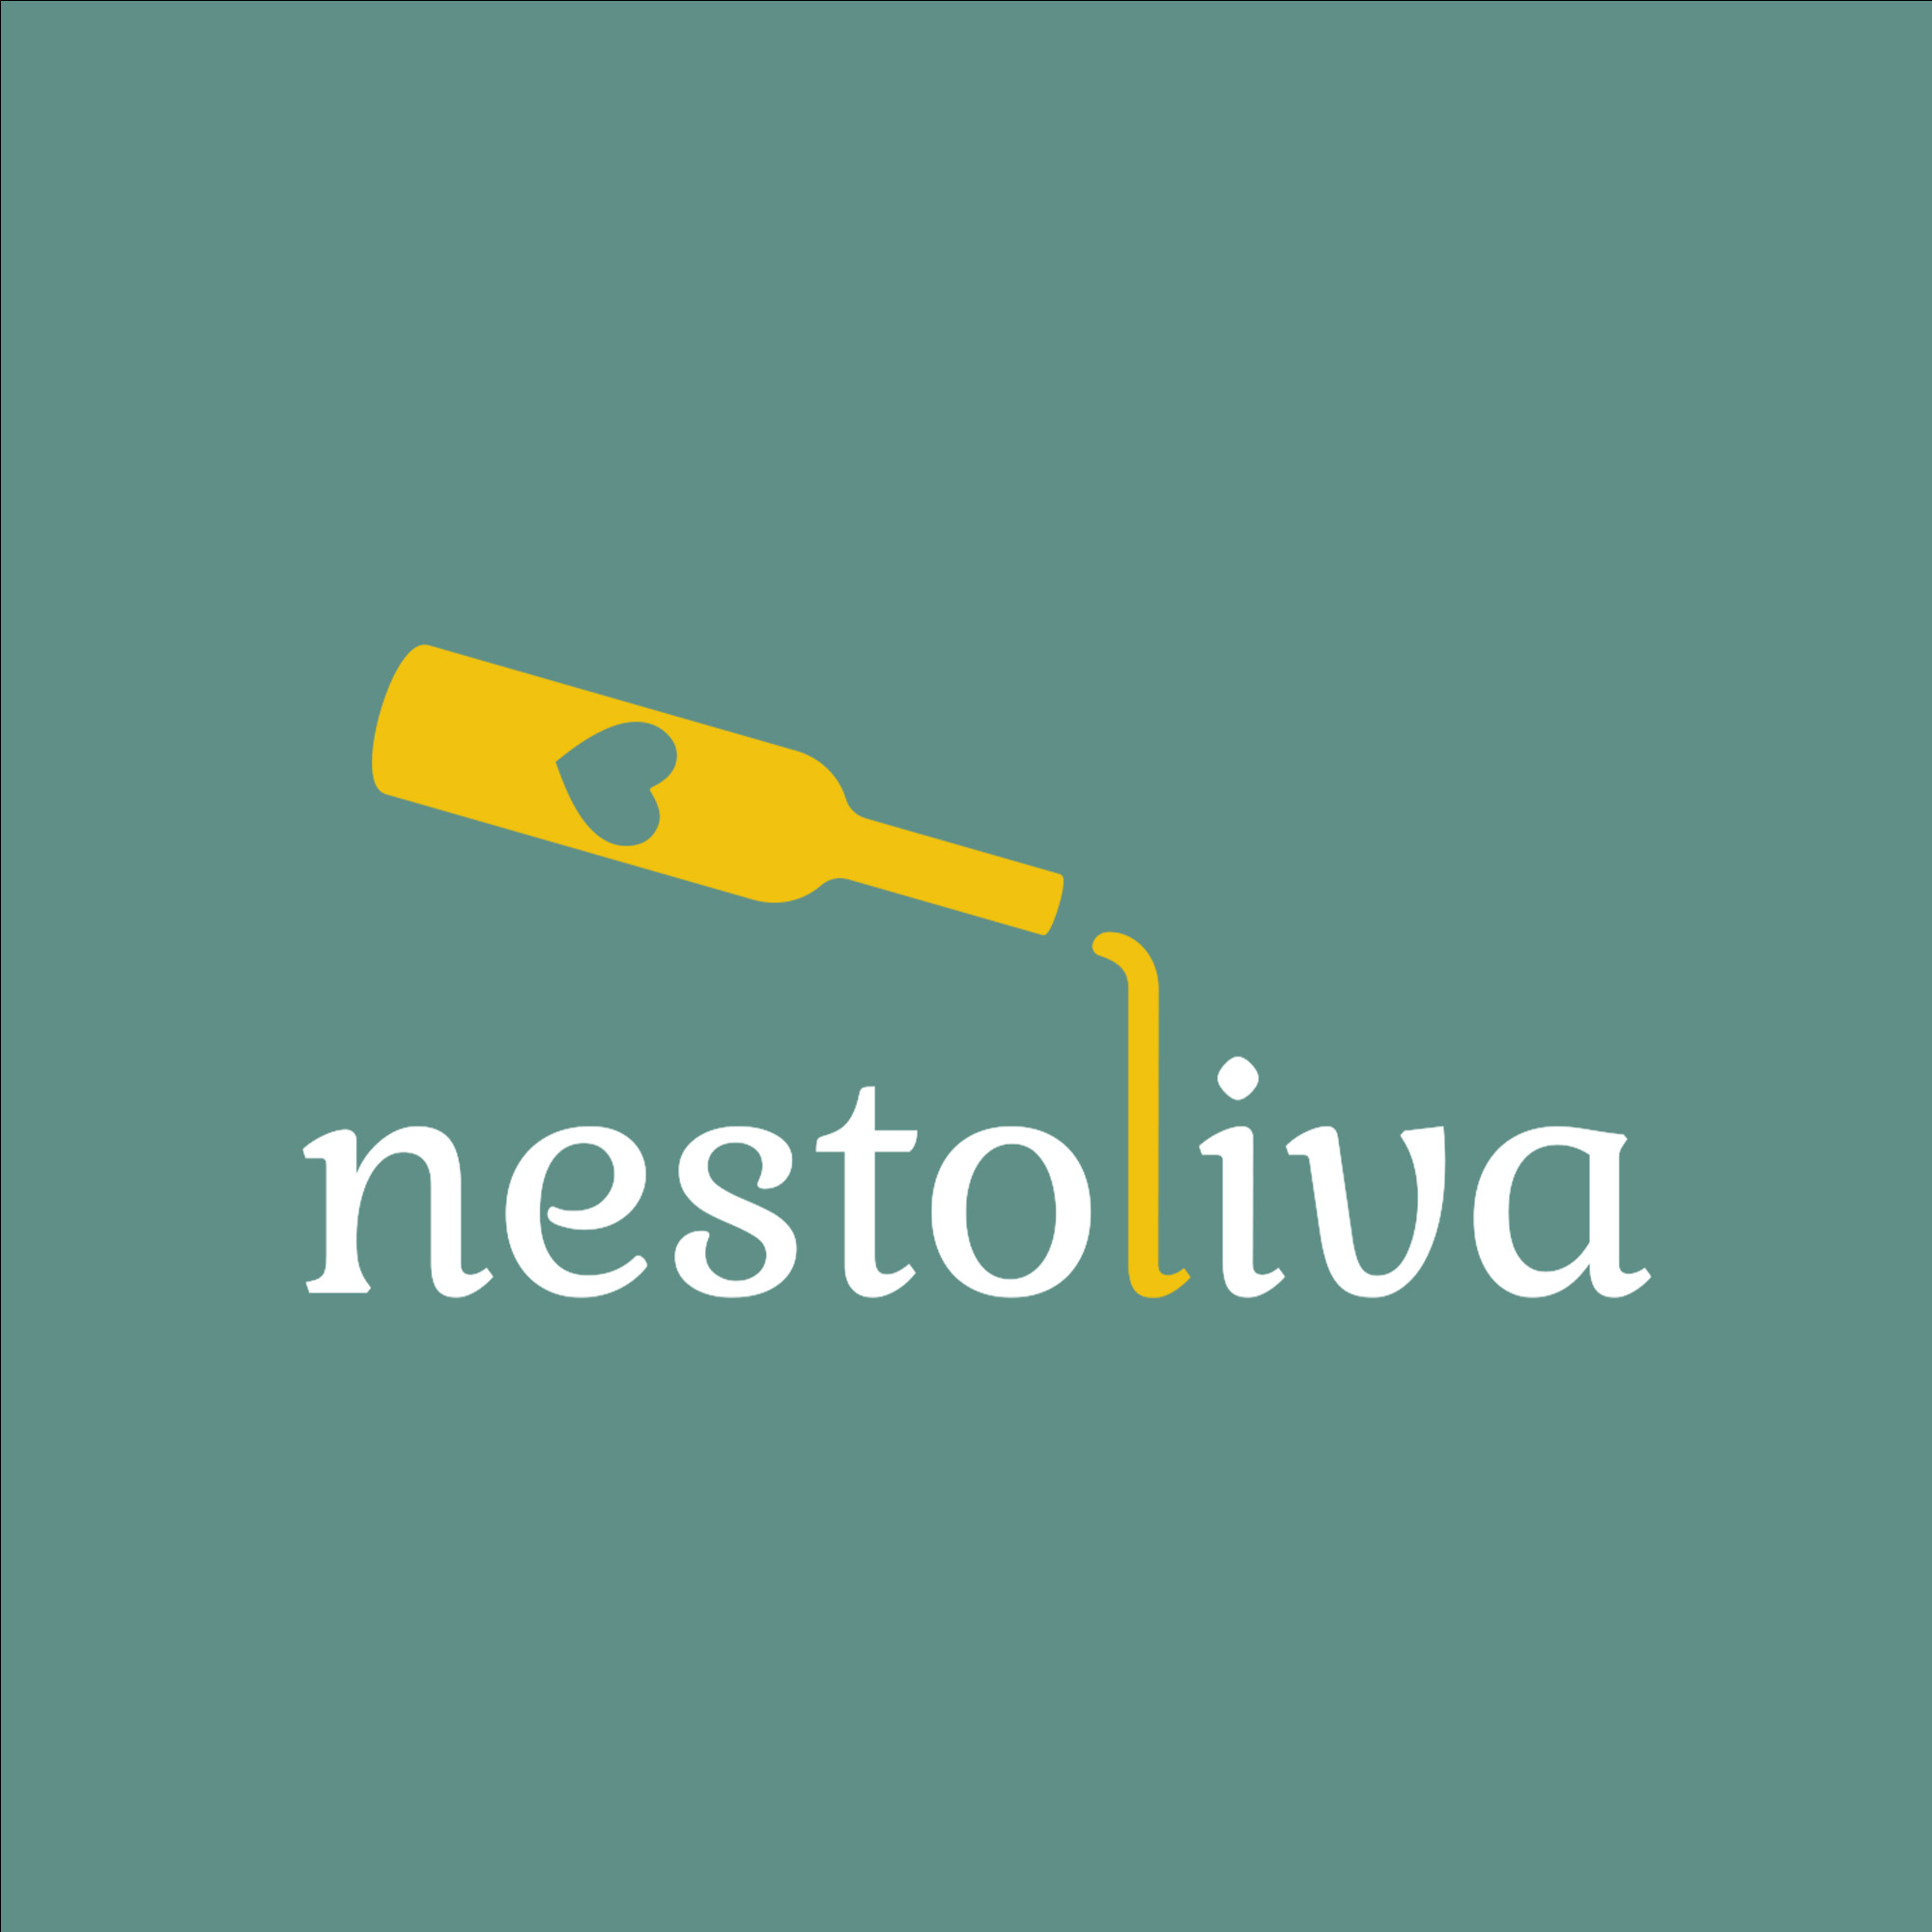 Nestoliva-Logo